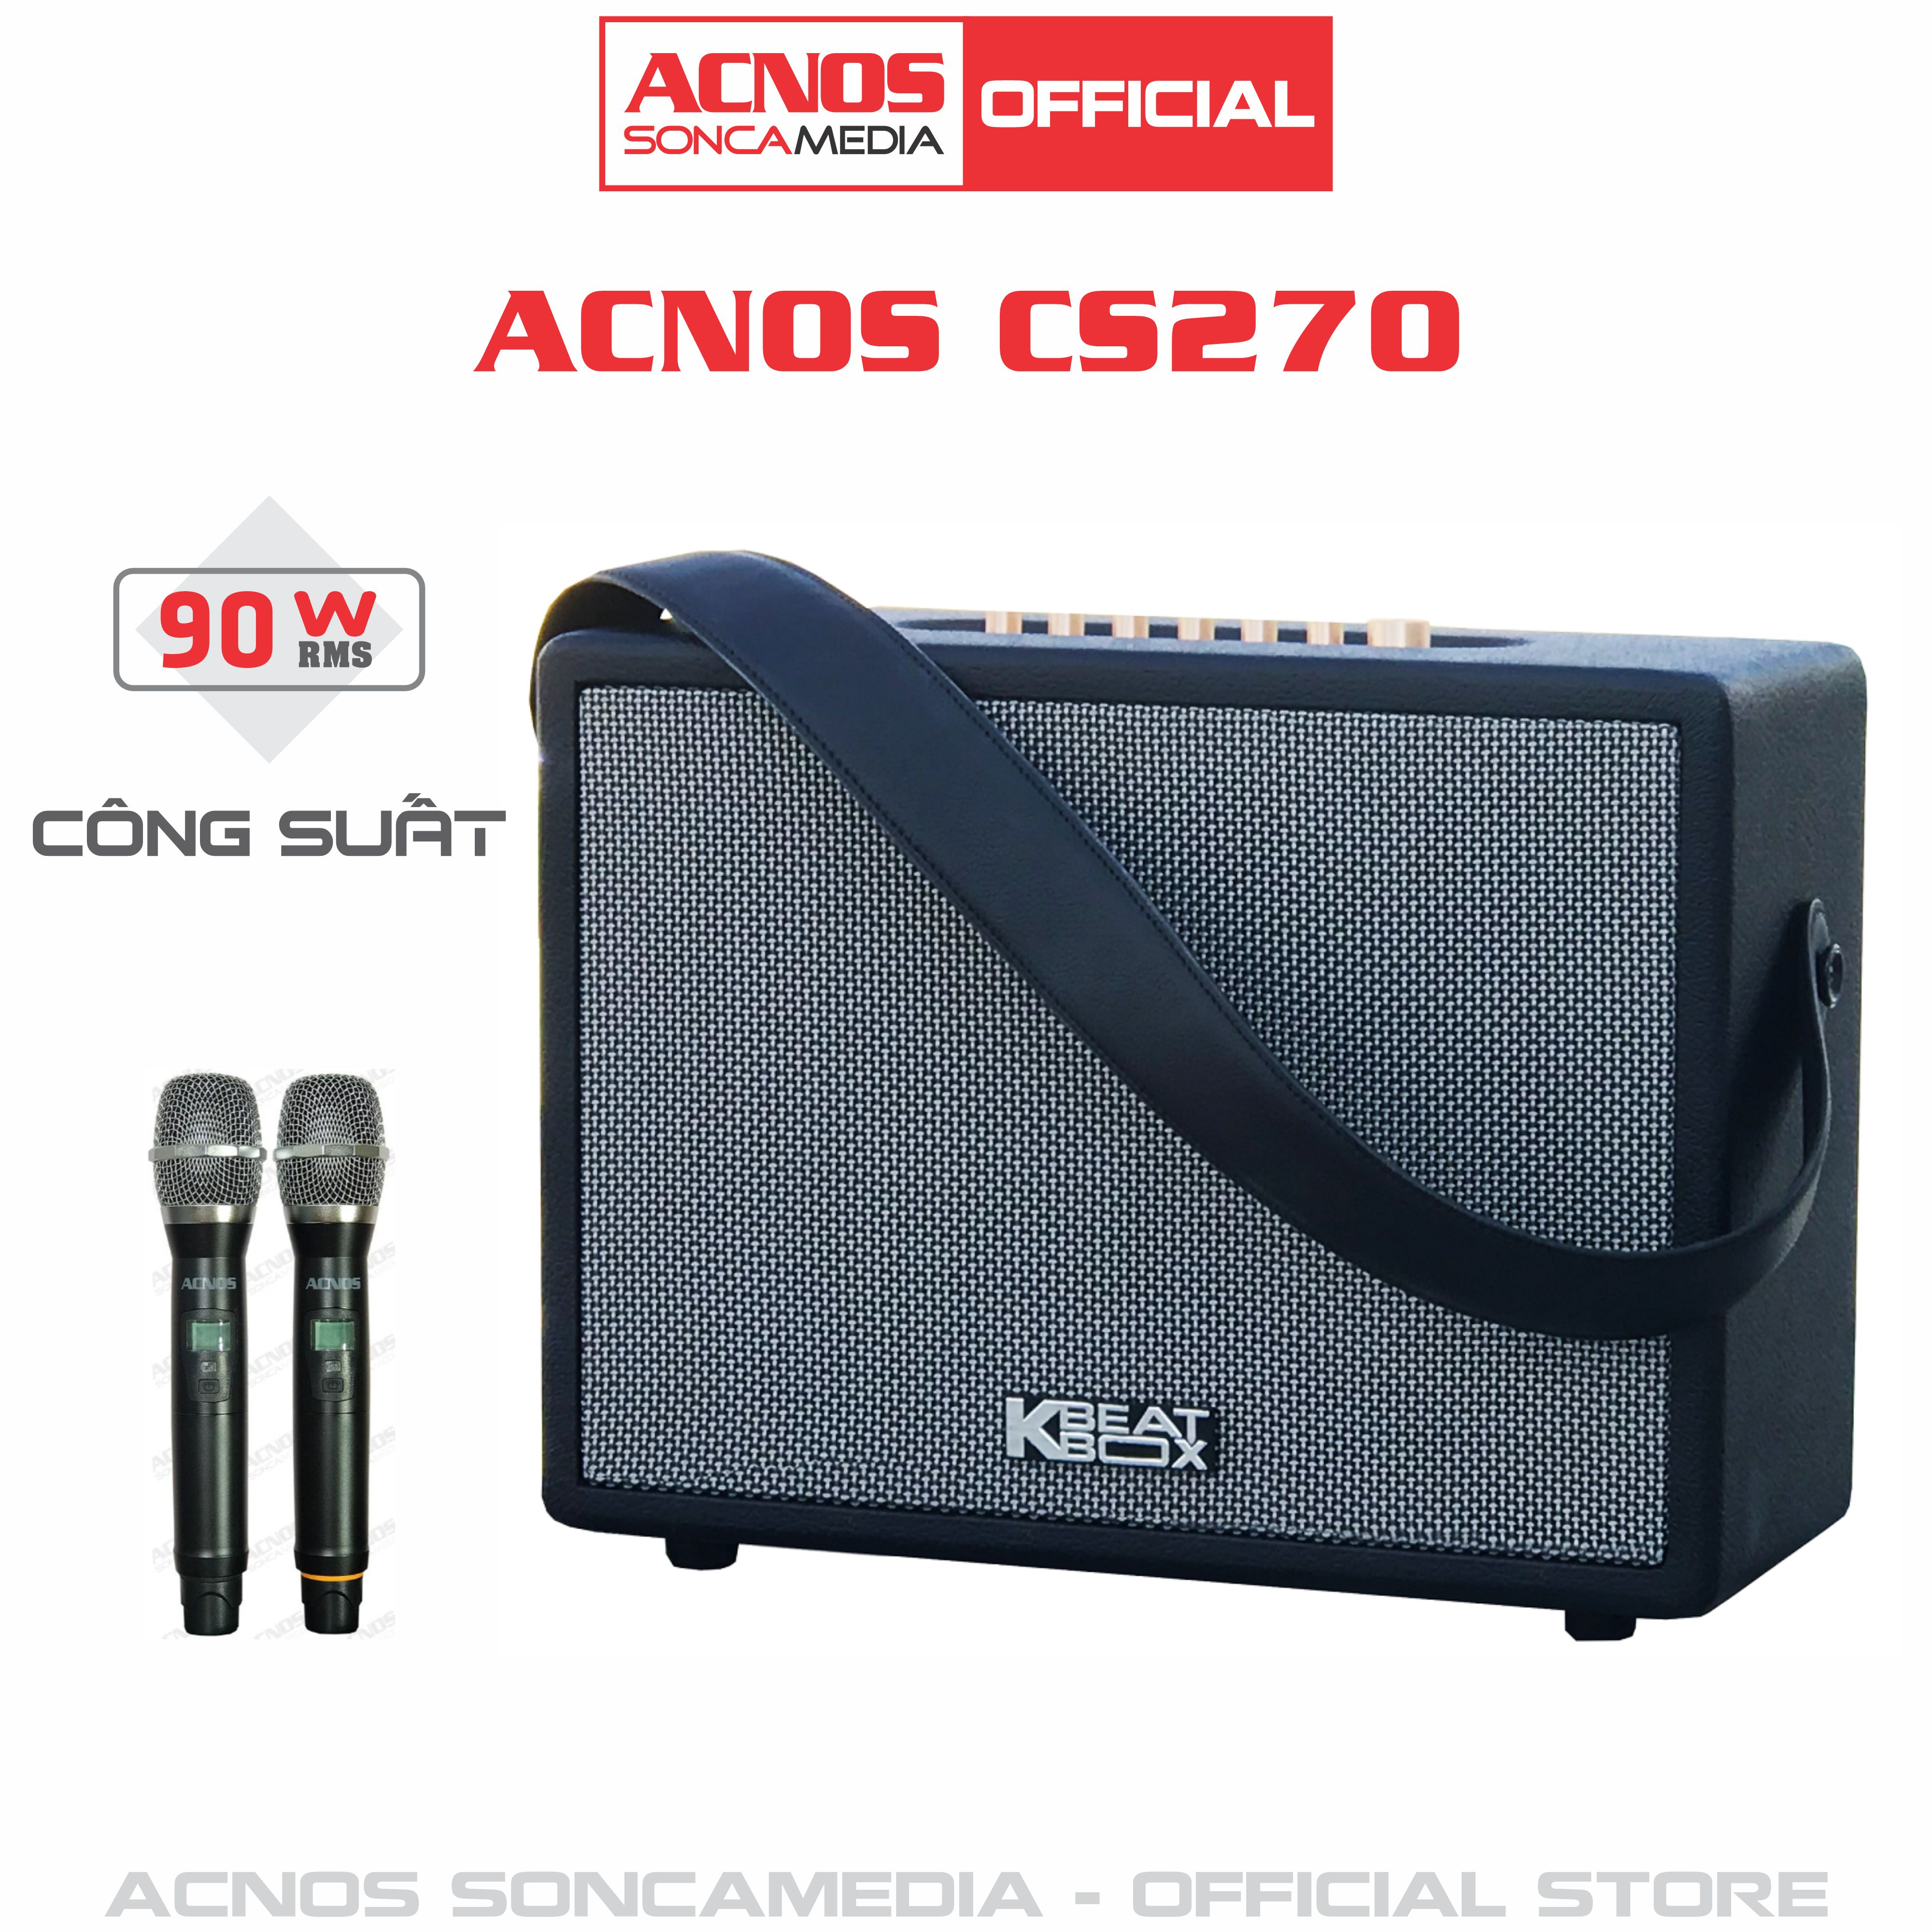 Dàn âm thanh di động xách tay mini ACNOS CS270